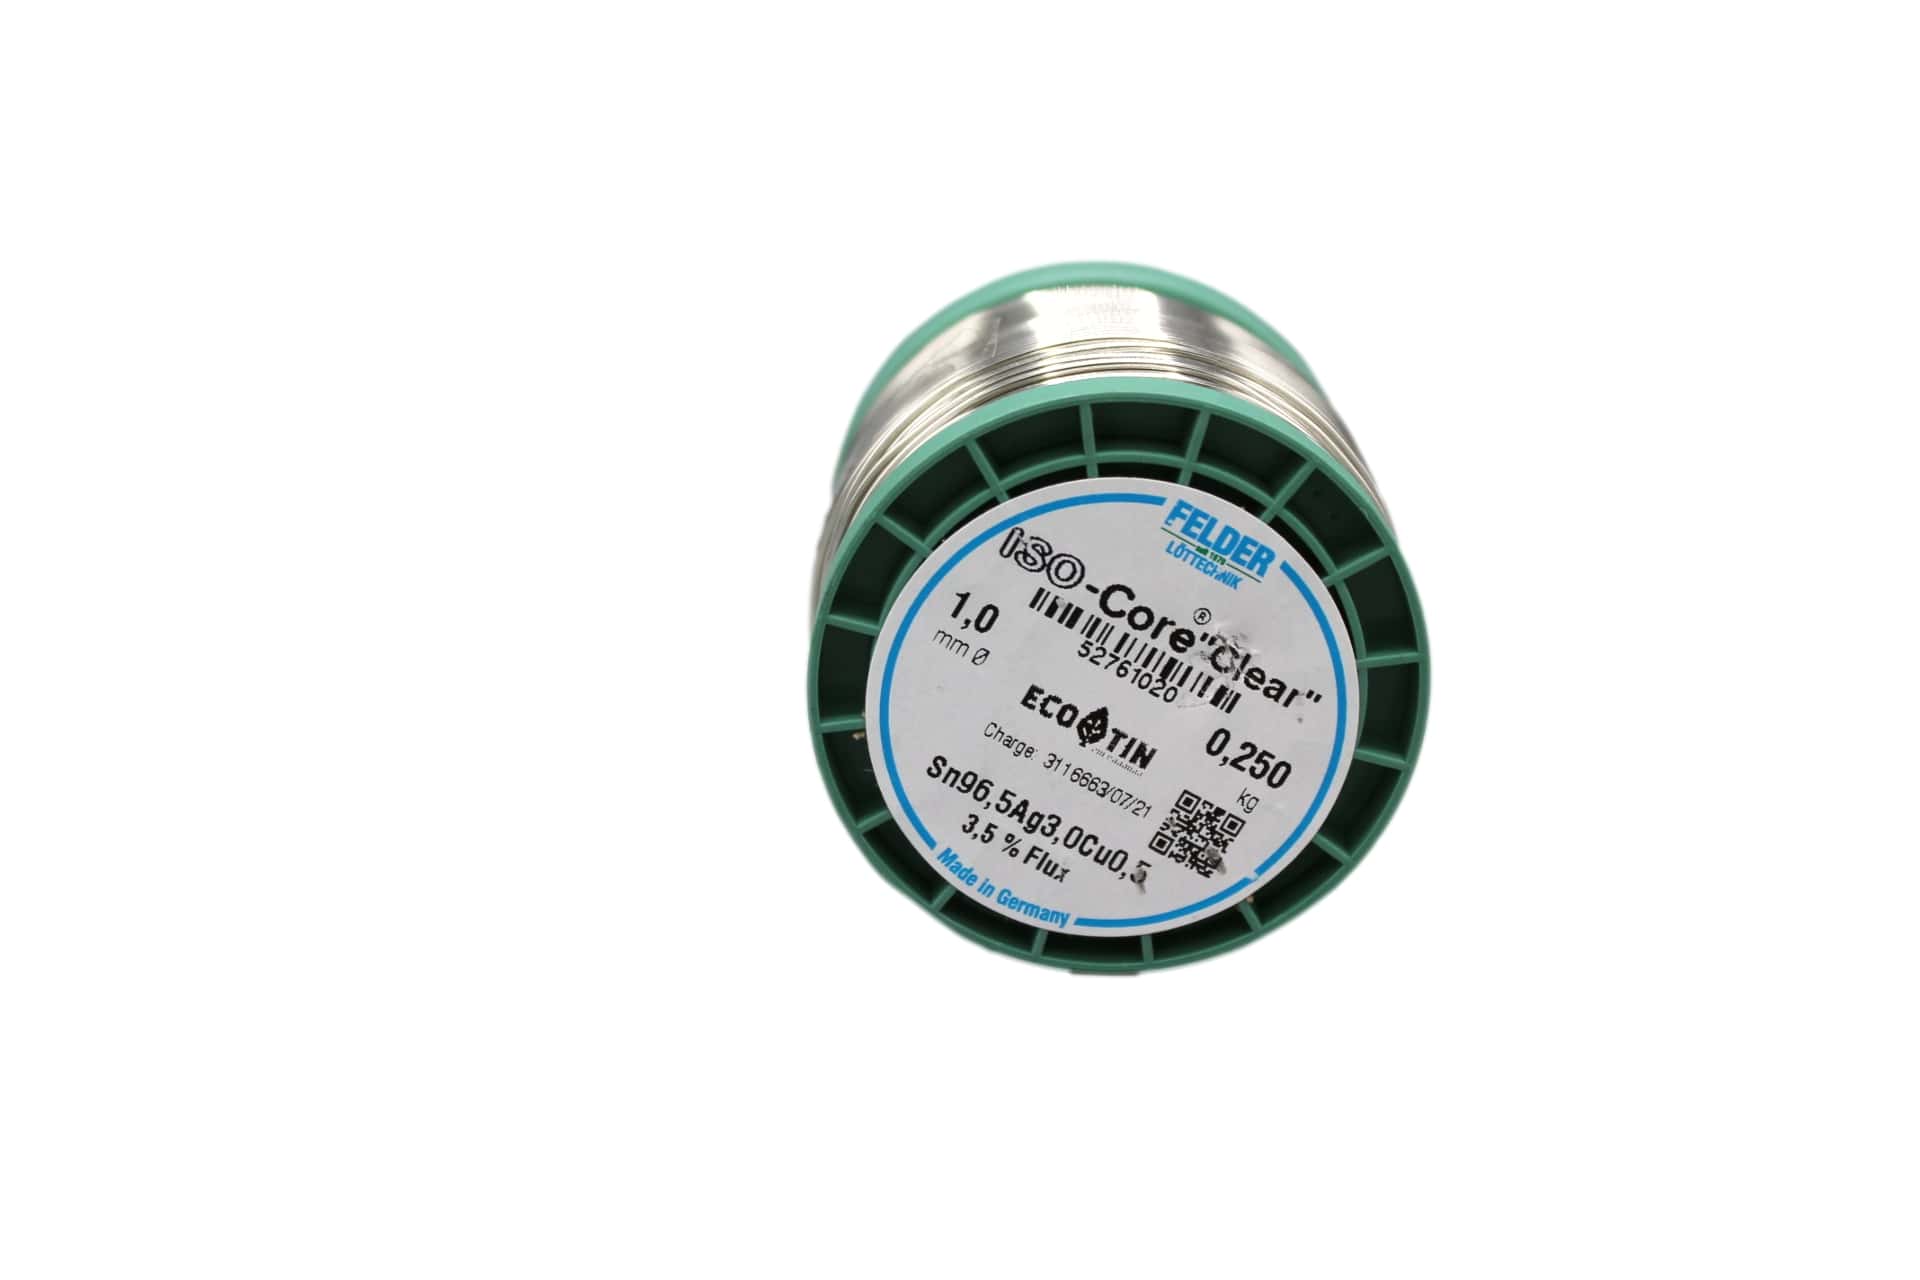 52761020 Felder solder wire, lead-free, SAC (Sn96,5Ag3,0Cu0,5), 1 mm, 250g, roll